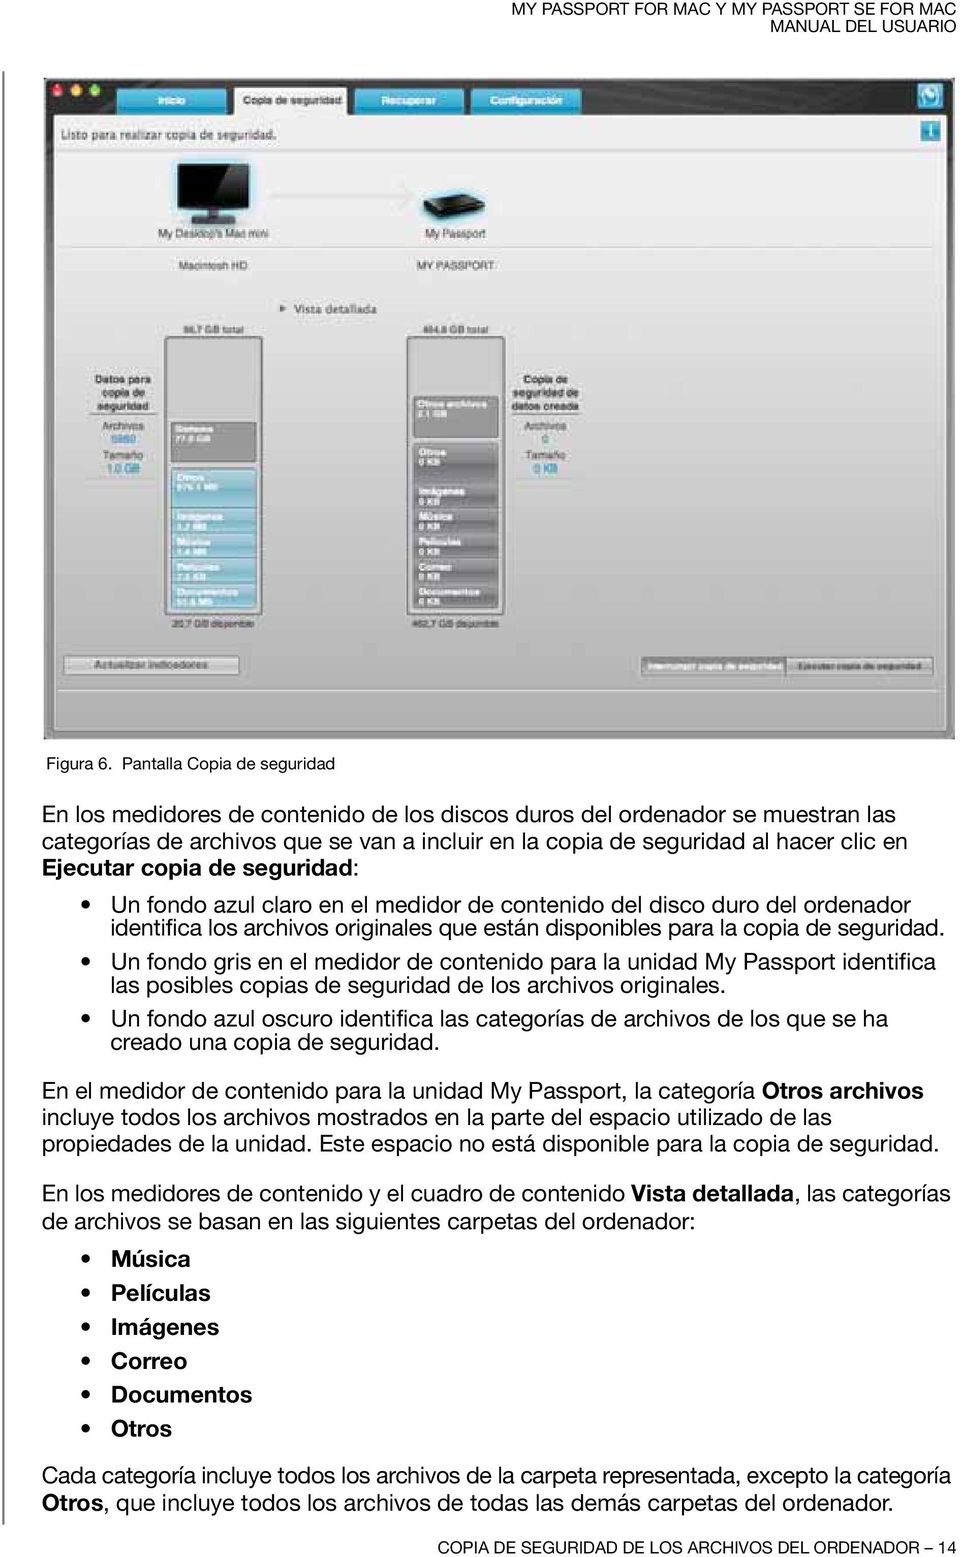 Ejecutar copia de seguridad: Un fondo azul claro en el medidor de contenido del disco duro del ordenador identifica los archivos originales que están disponibles para la copia de seguridad.